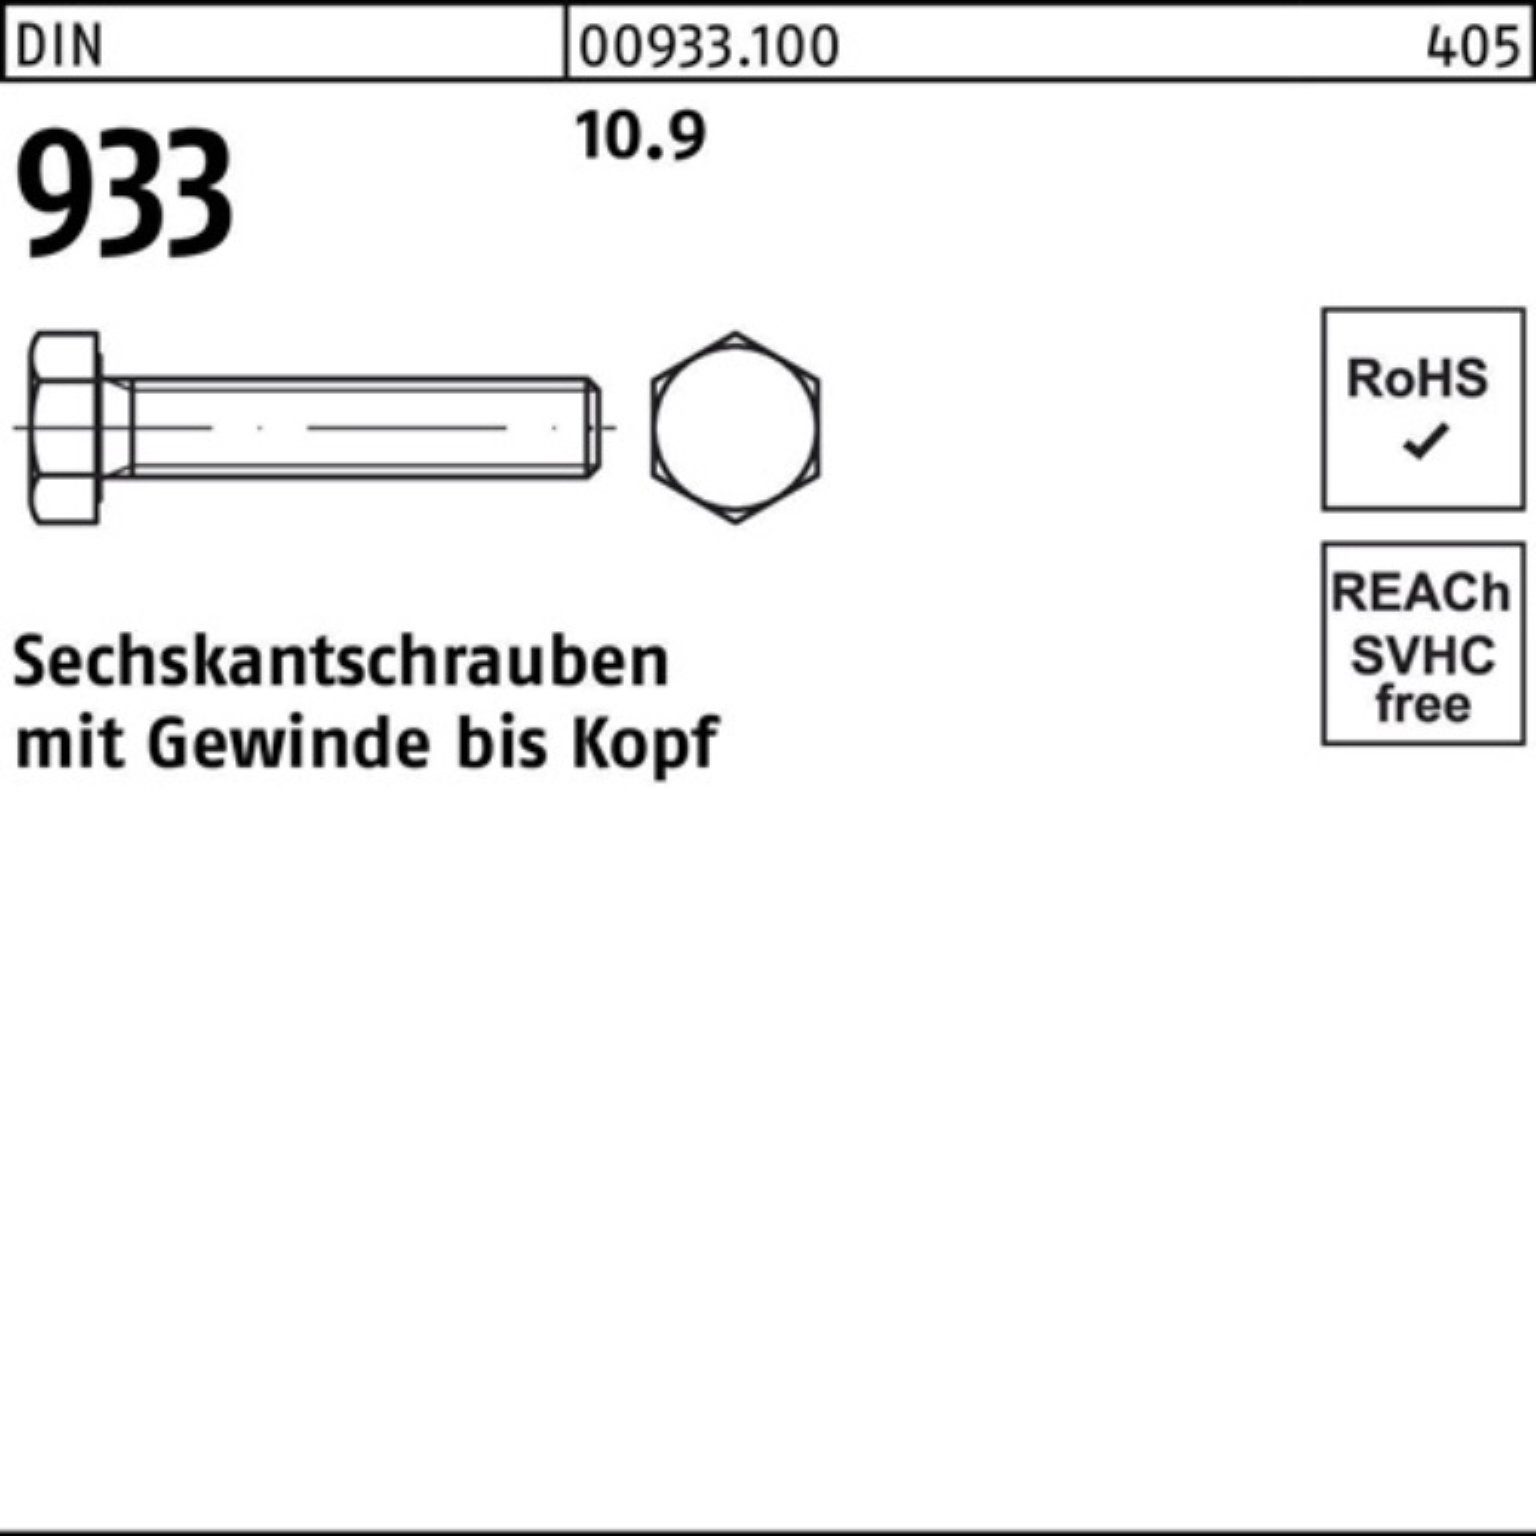 Reyher Sechskantschraube 200er Pack 10.9 Stück 933 VG 200 12 DIN Sechskantschraube 93 DIN M10x